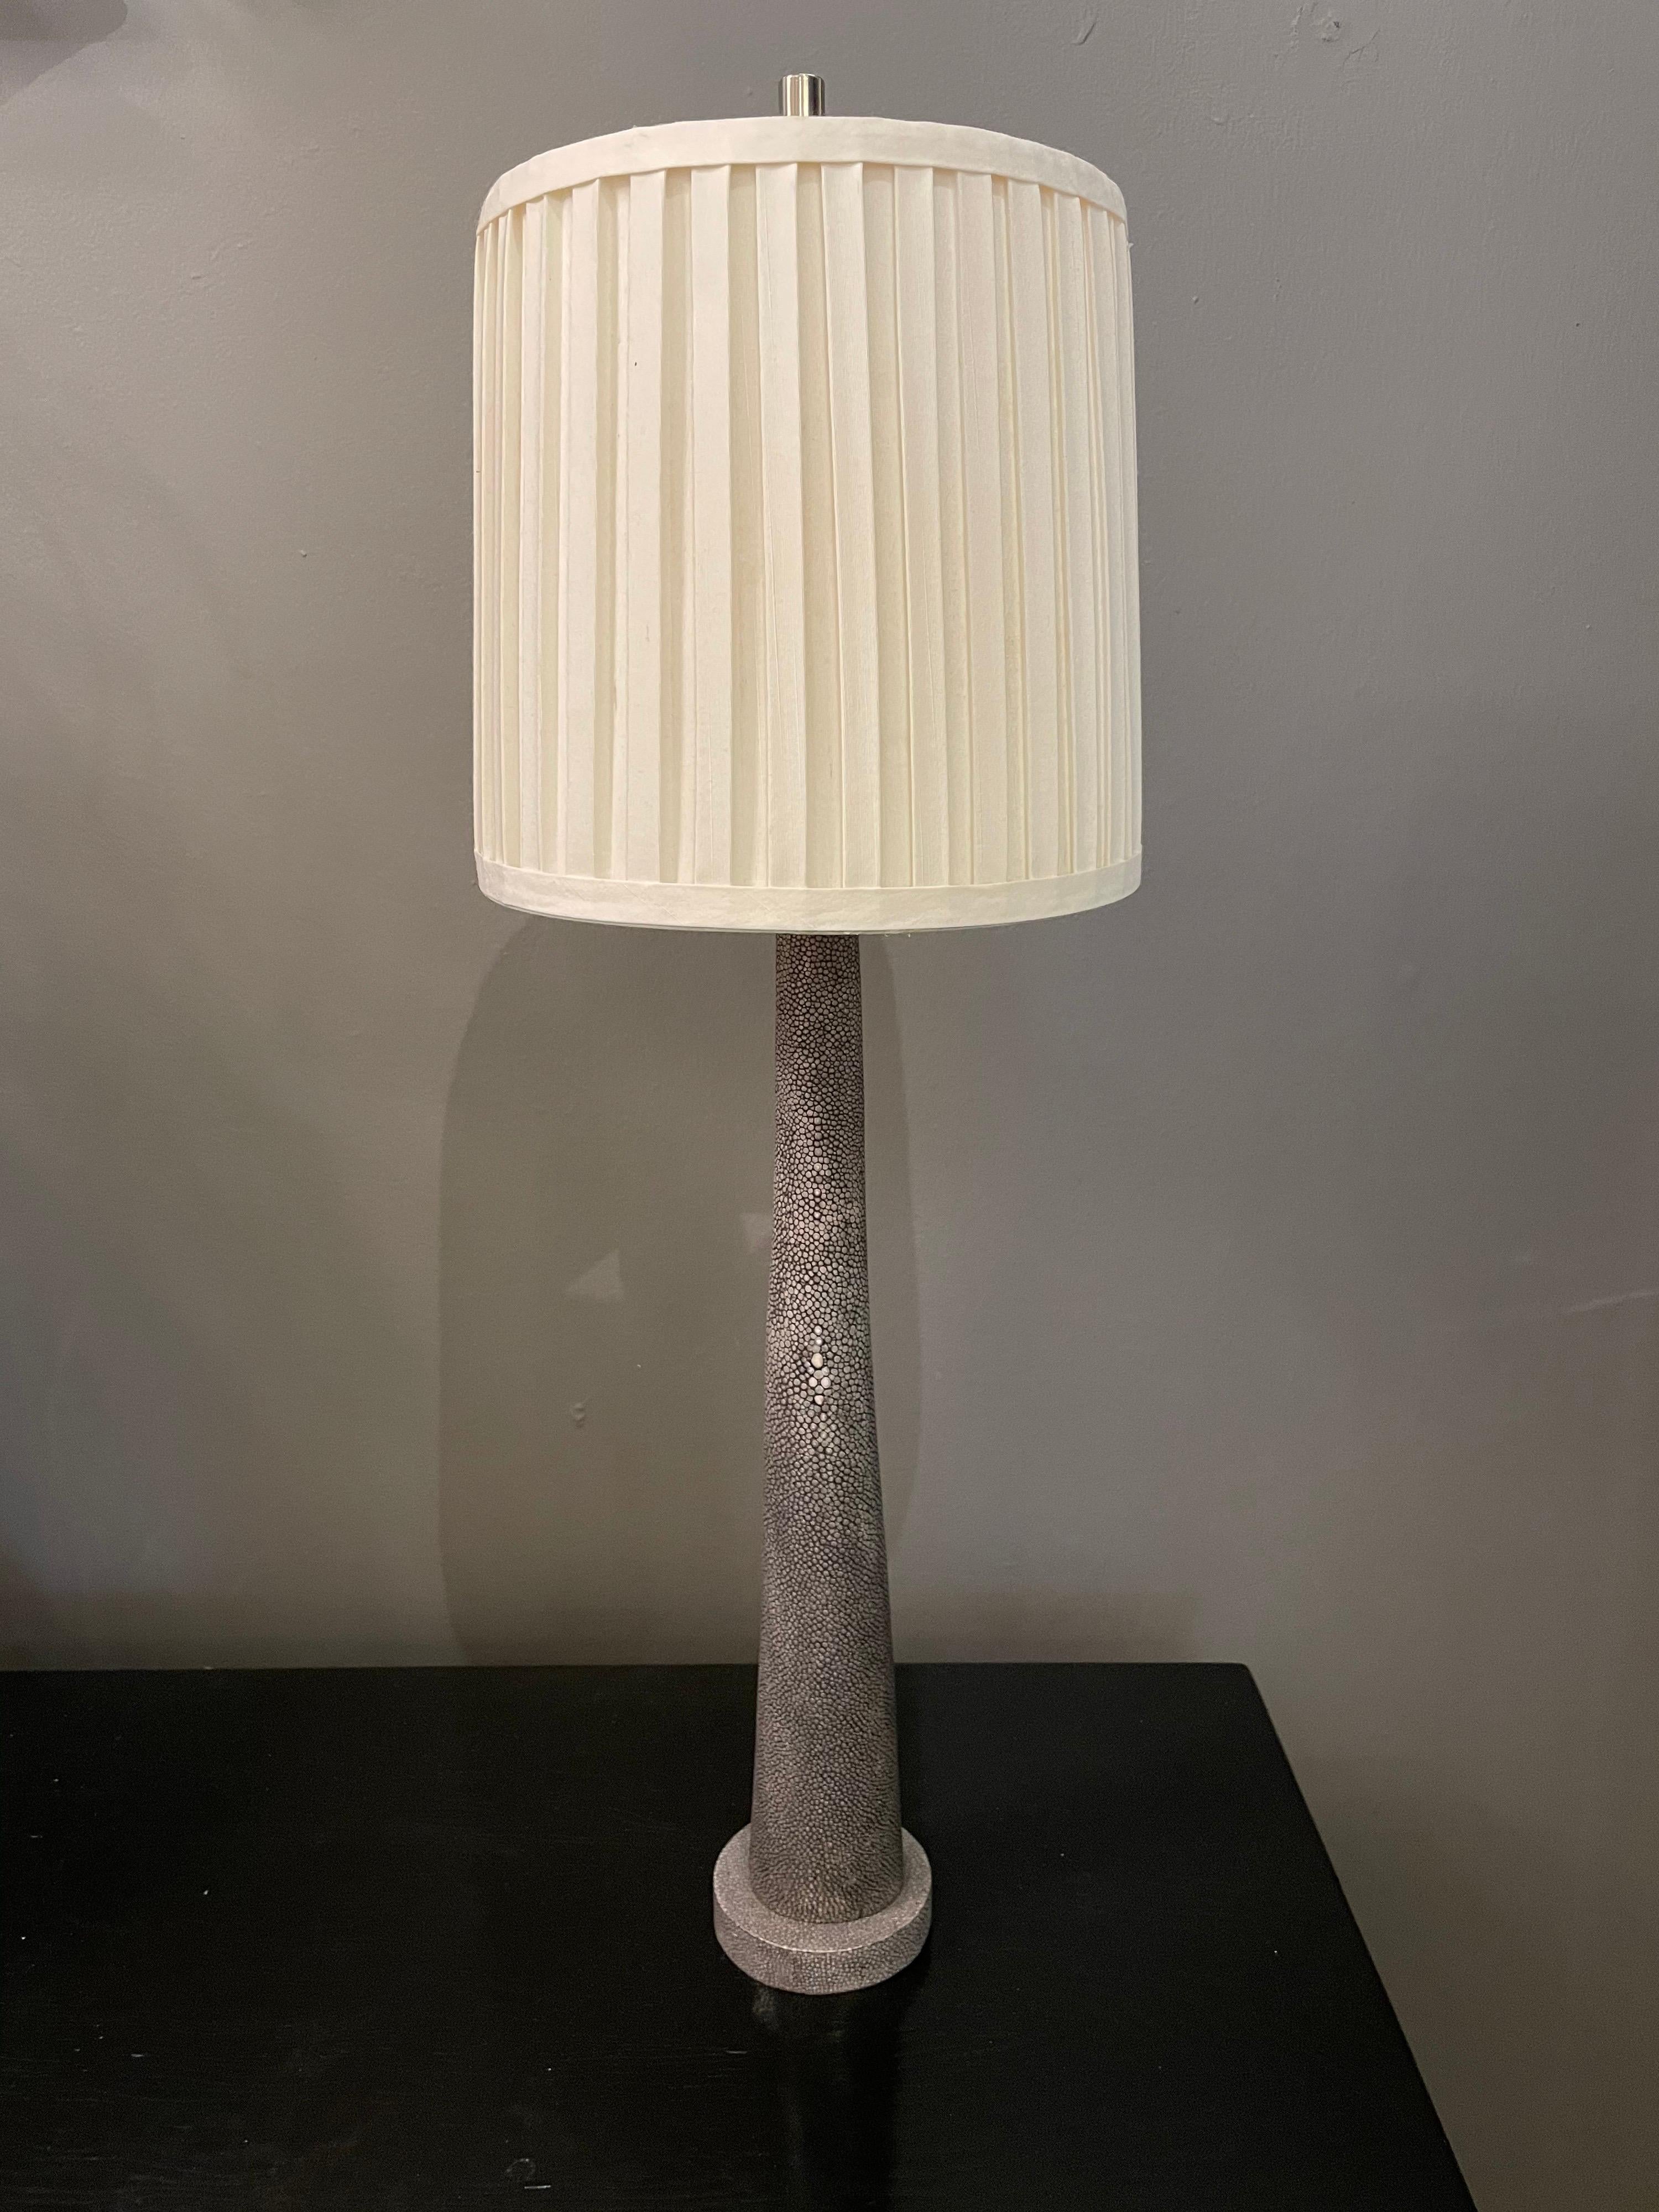 Revêtue de galuchat gris anthracite de la base au sommet, cette lampe de style brindille est très organique. L'abat-jour illustré ici est inclus sur demande.